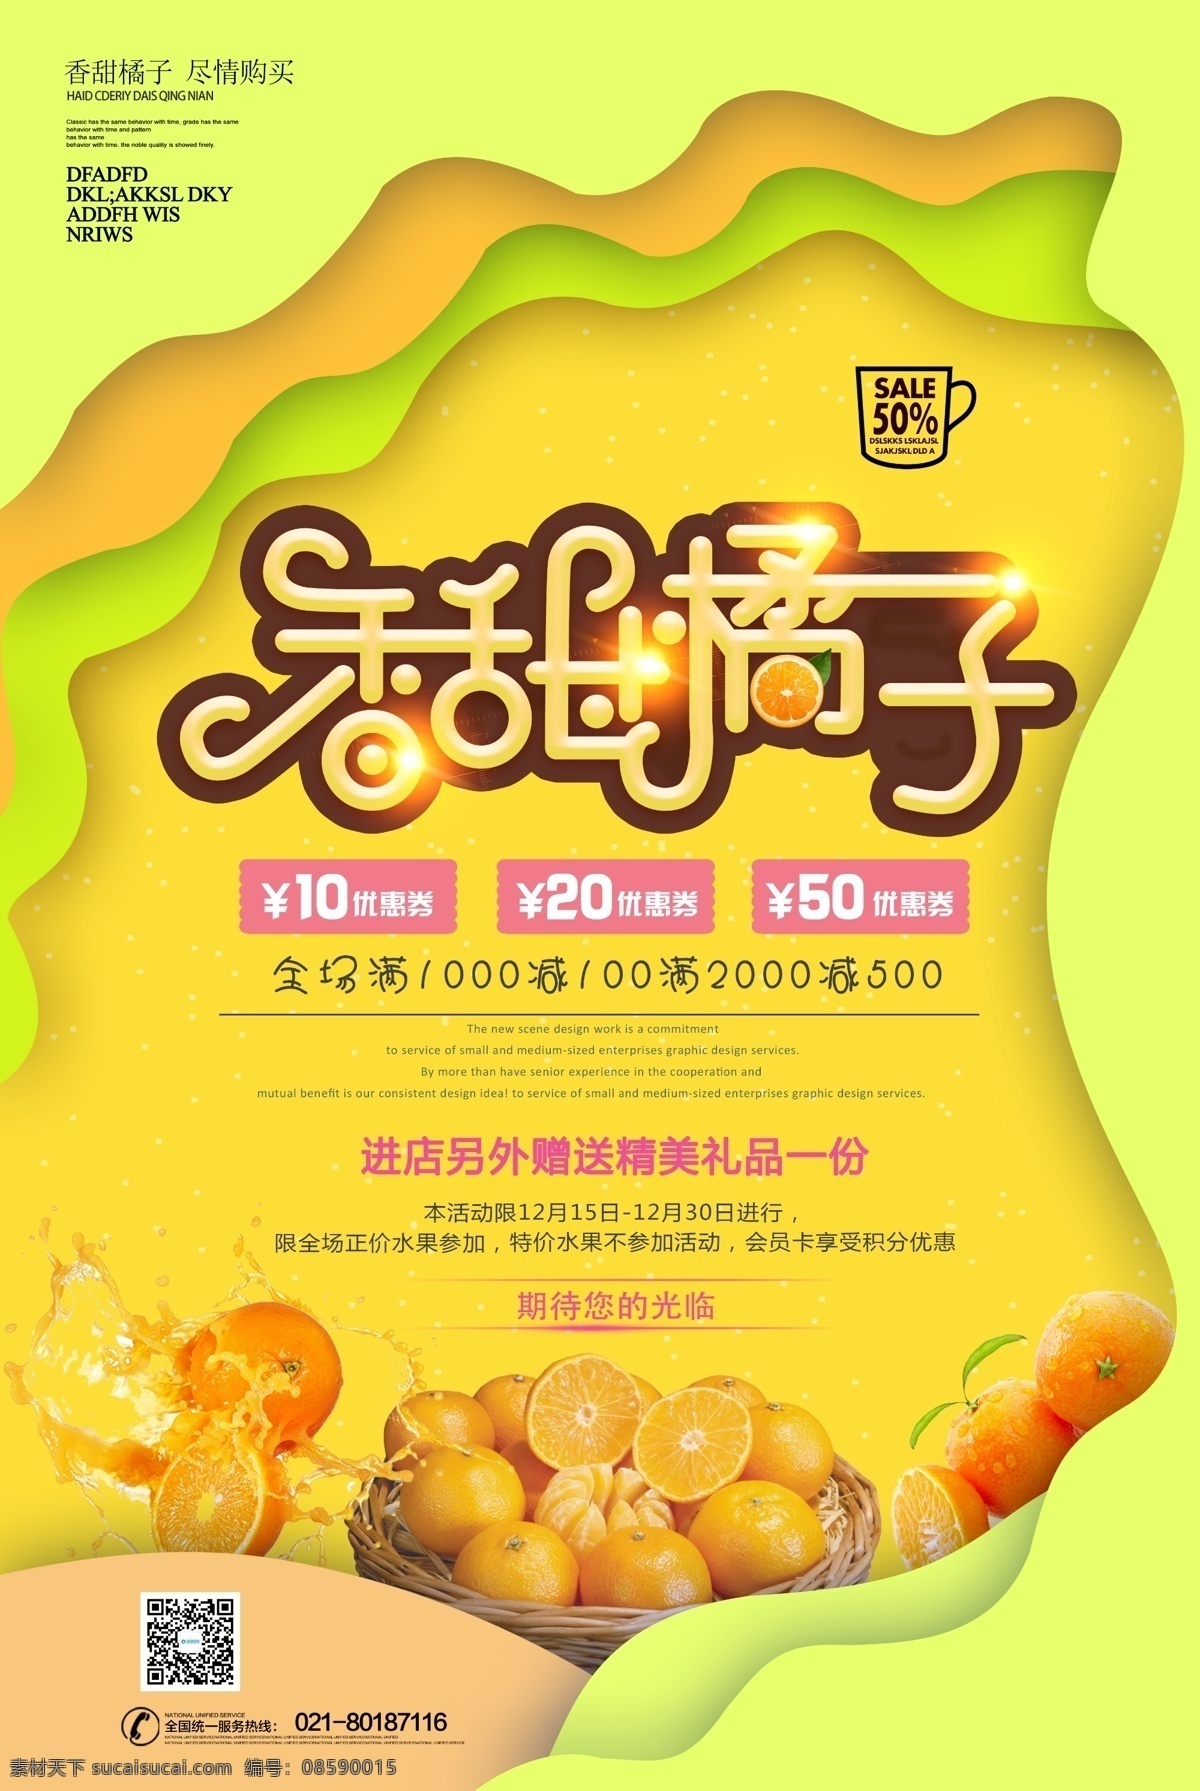 黄色 香甜 橘子 剪纸 风海 报 剪纸风 新鲜 美味 促销 海报 水果海报